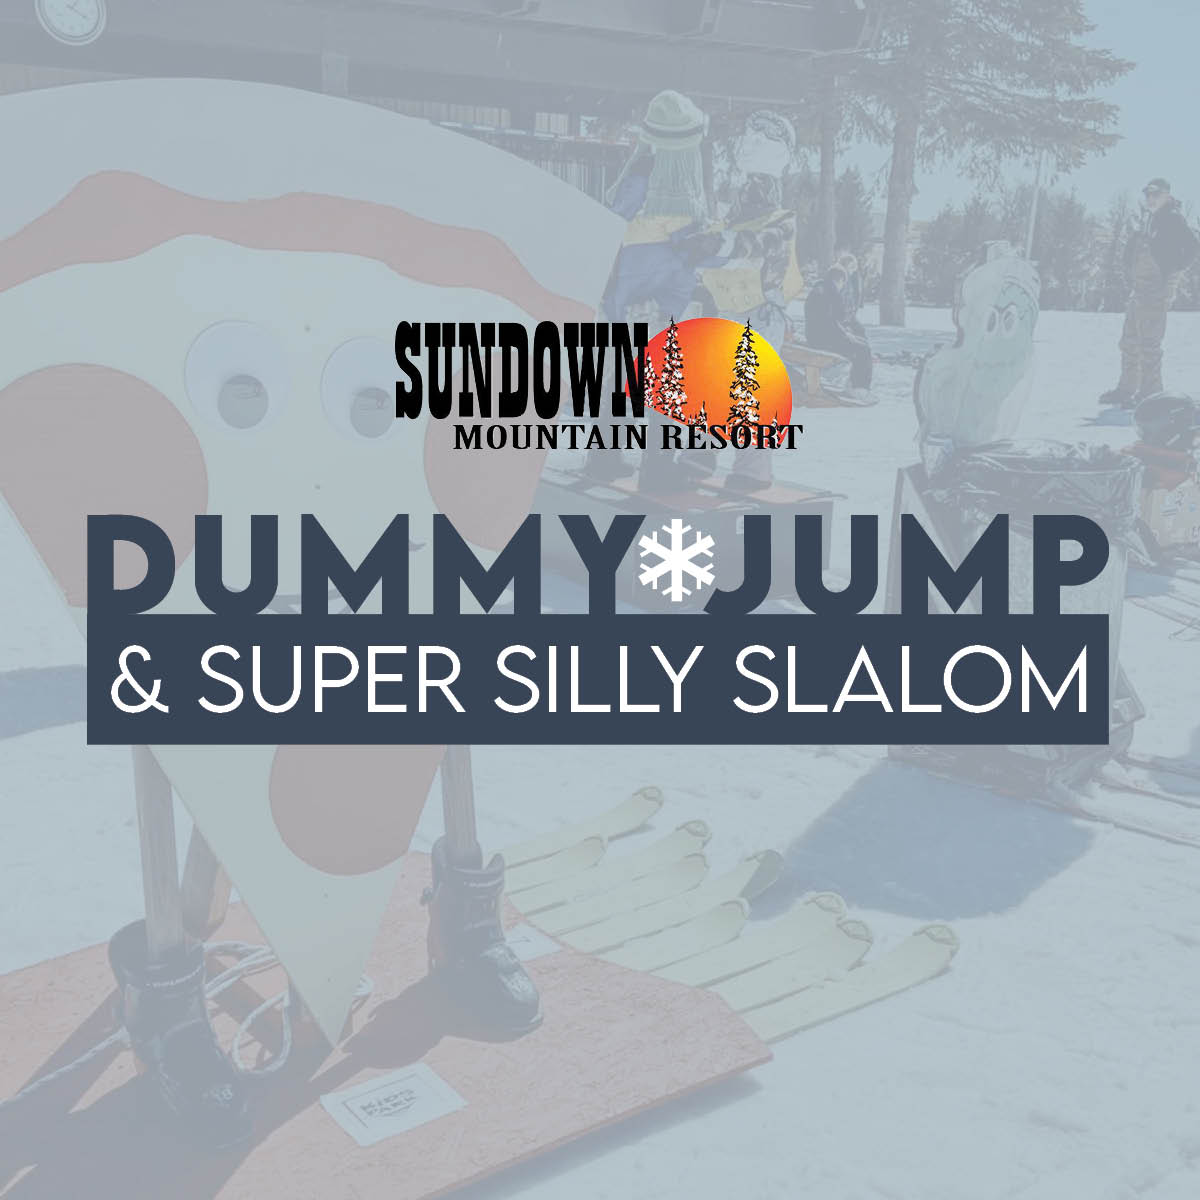 Dummy_Jump_Super_Silly_Slalom